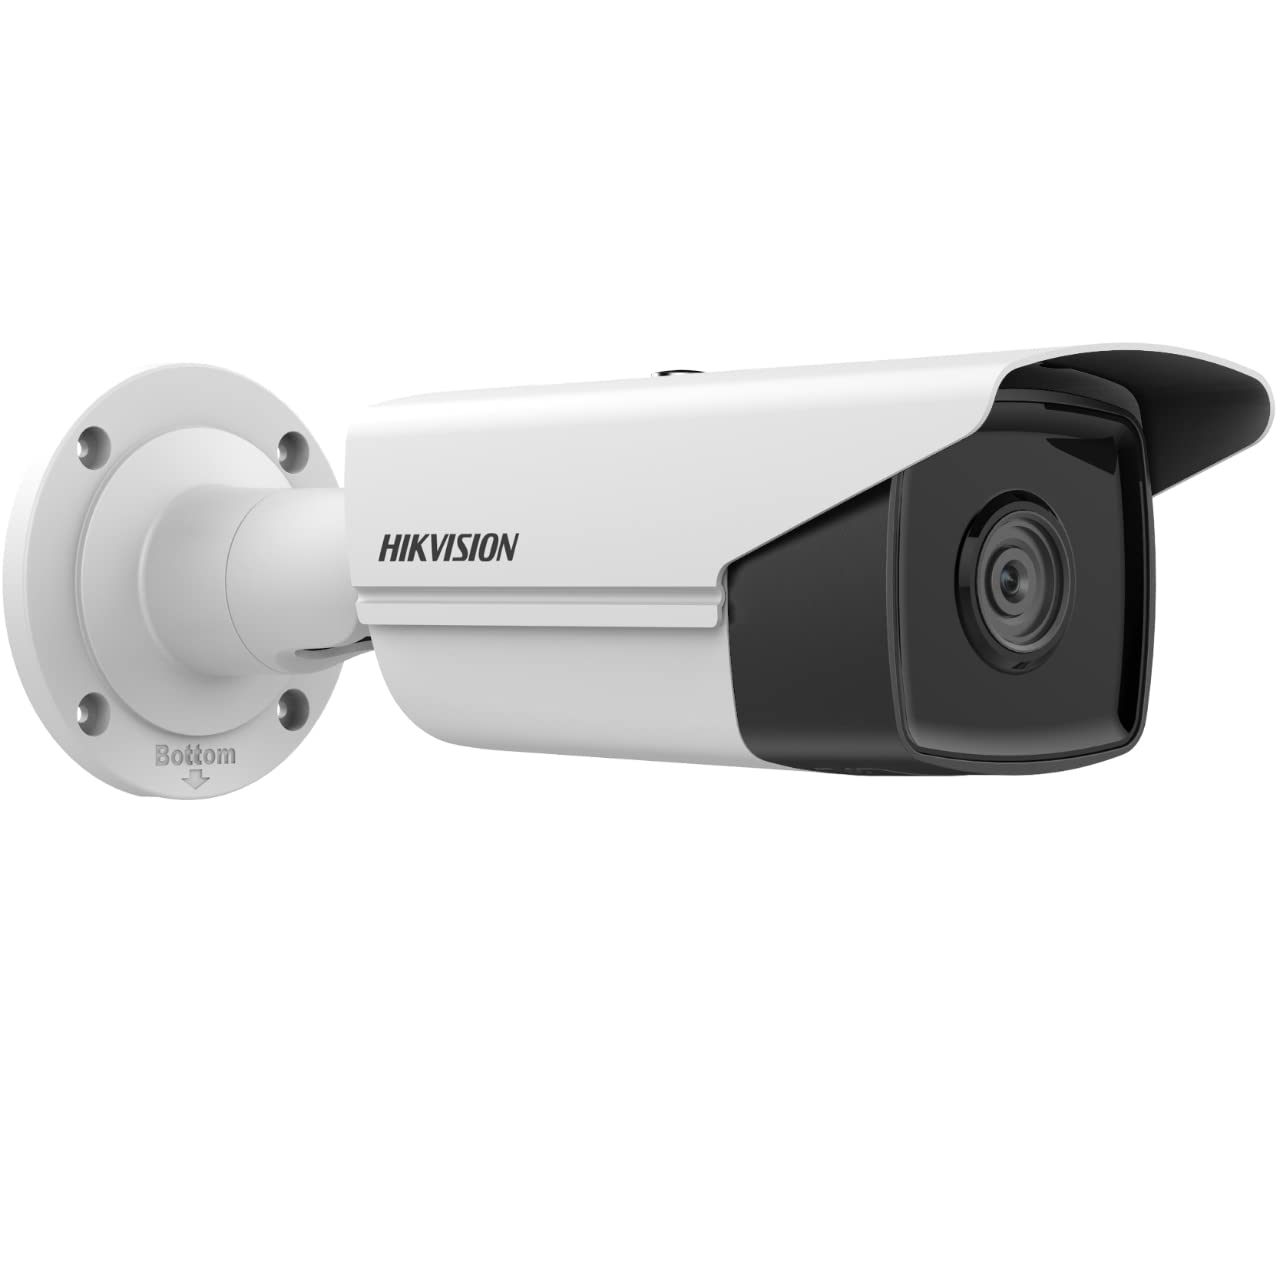 Hikvision DS-2CD2T43G2-2I(2.8mm) Bullet Überwachungskamera mit 2 Megapixel, bis zu 60m Beleuchtung, professionelle Überwachungskamera